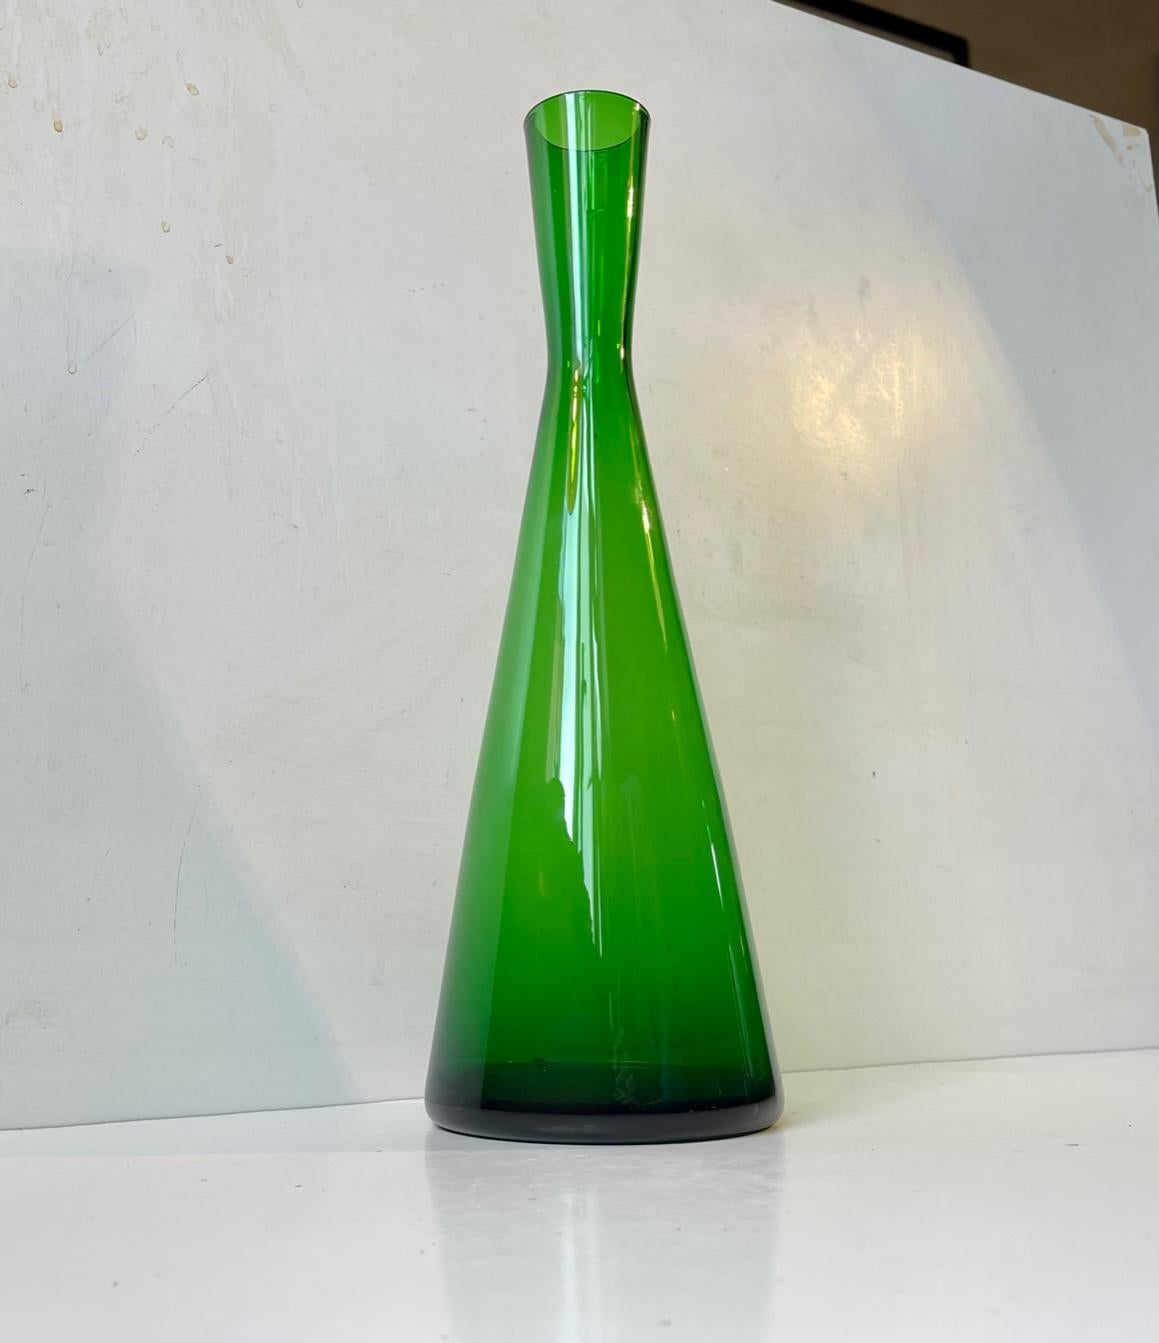 Grüne mundgeblasene Glasvase in Diablo-Form, entworfen 1956 von Per Lütken. Hergestellt in Holmegaard in Dänemark zwischen 1956-65. Das ist sehr selten. Maße: Höhe: 35 cm, Durchmesser: 11/4,5 cm. Sie kann auch als Wasserflasche verwendet werden.